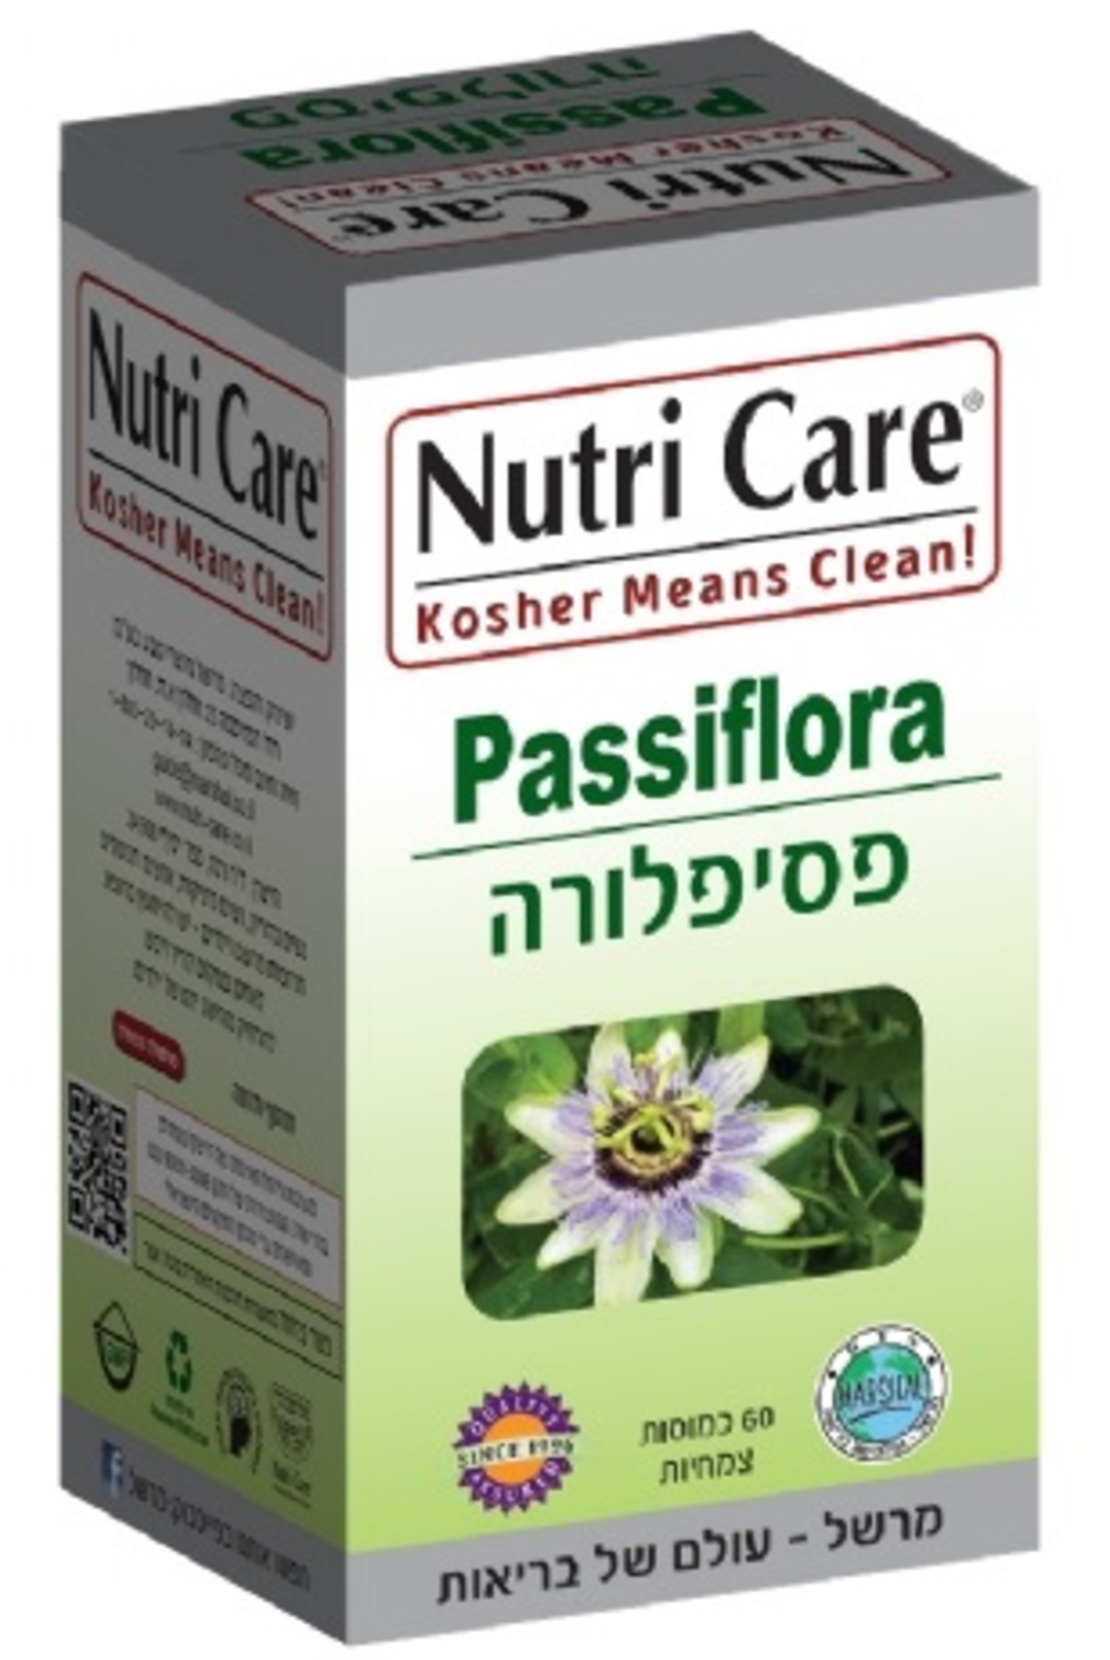 נוטרי קר - פסיפלורה Nutri Care Passiflora